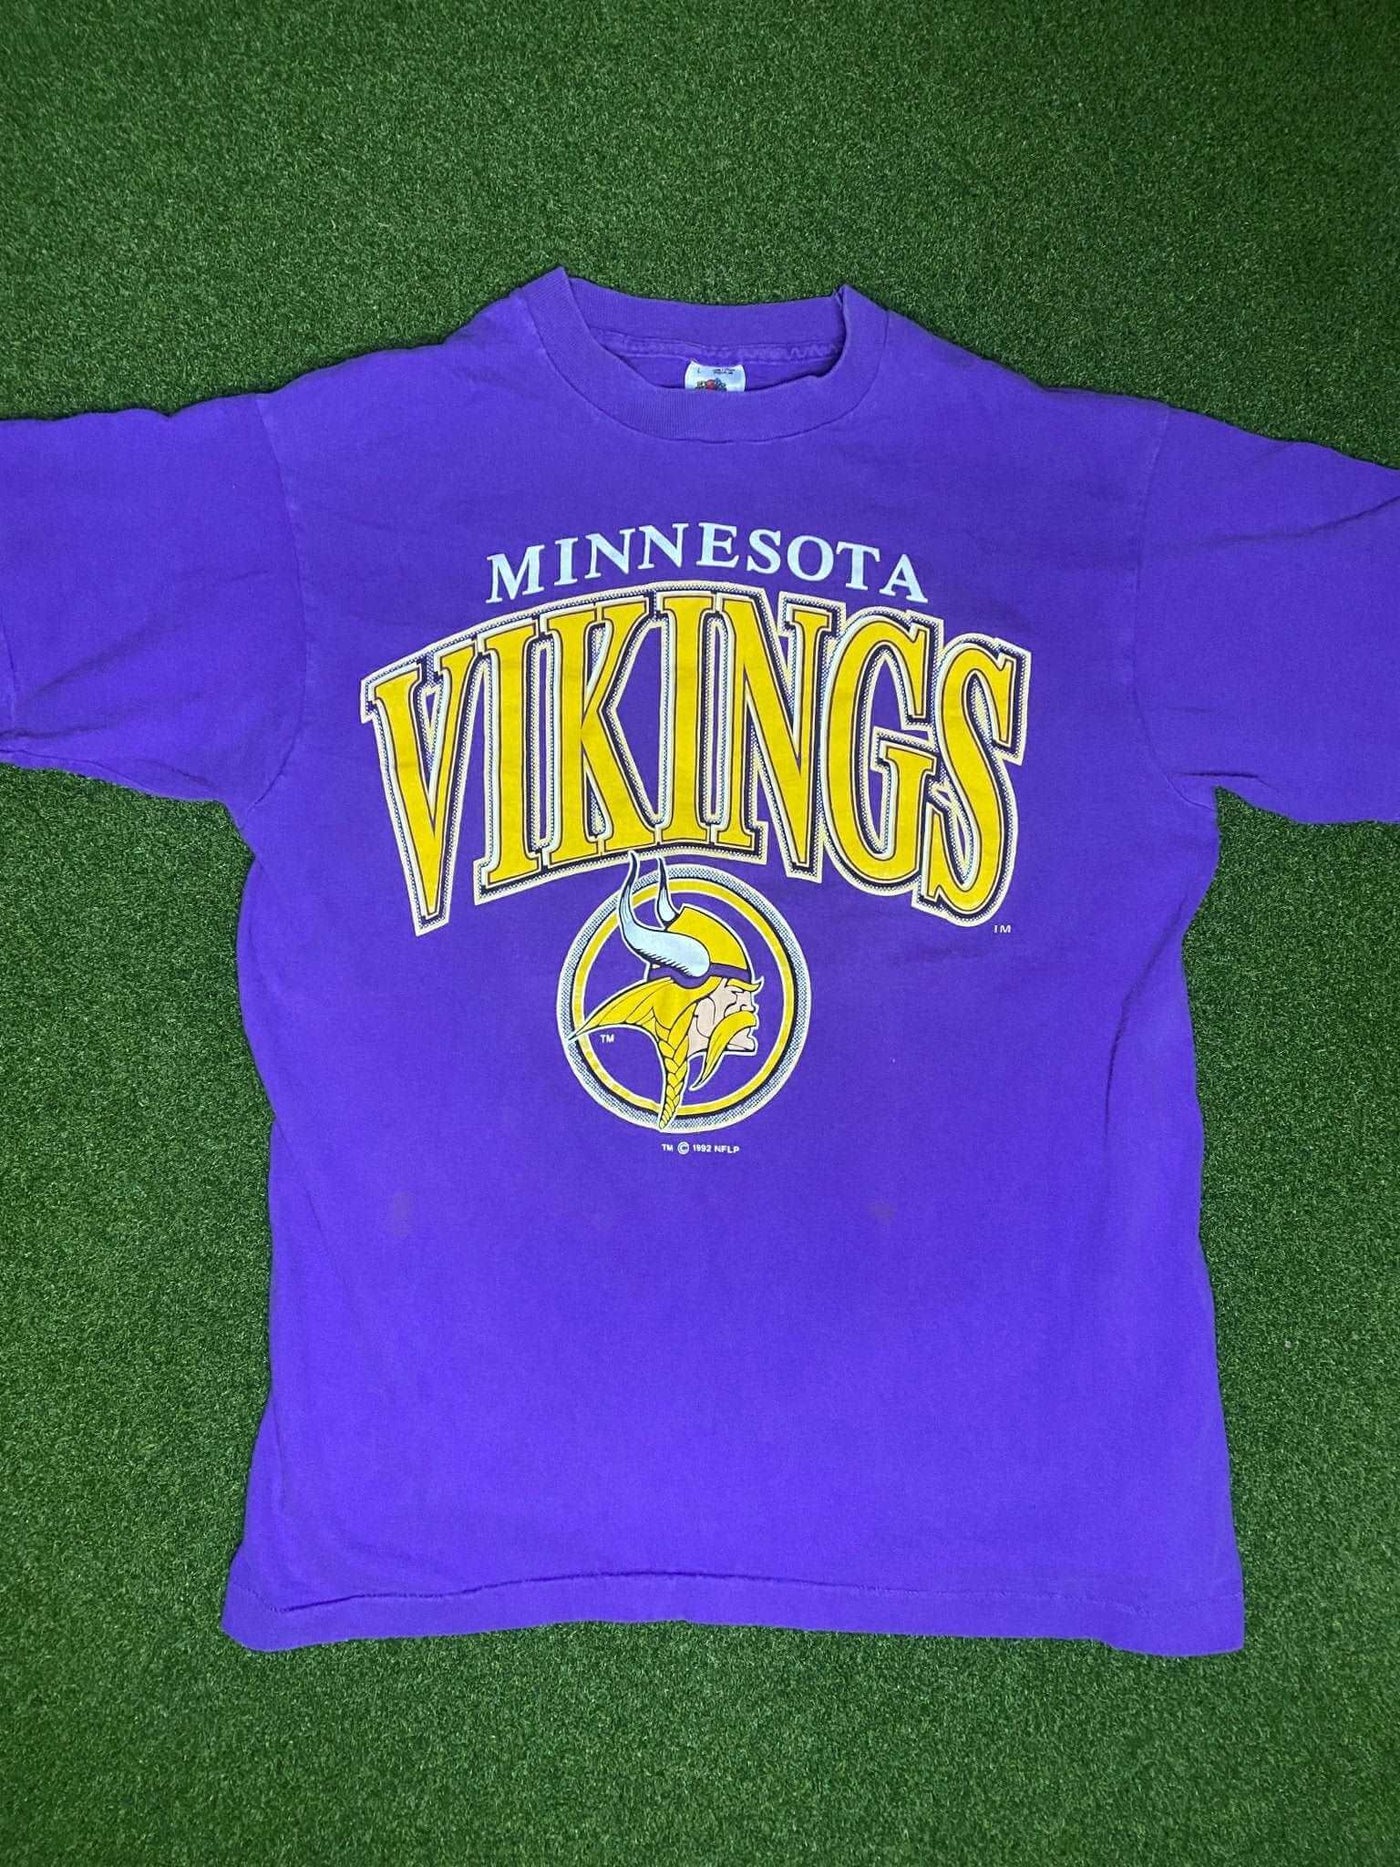 1992 Minnesota Vikings - Vintage NFL Tee Shirt (Large)